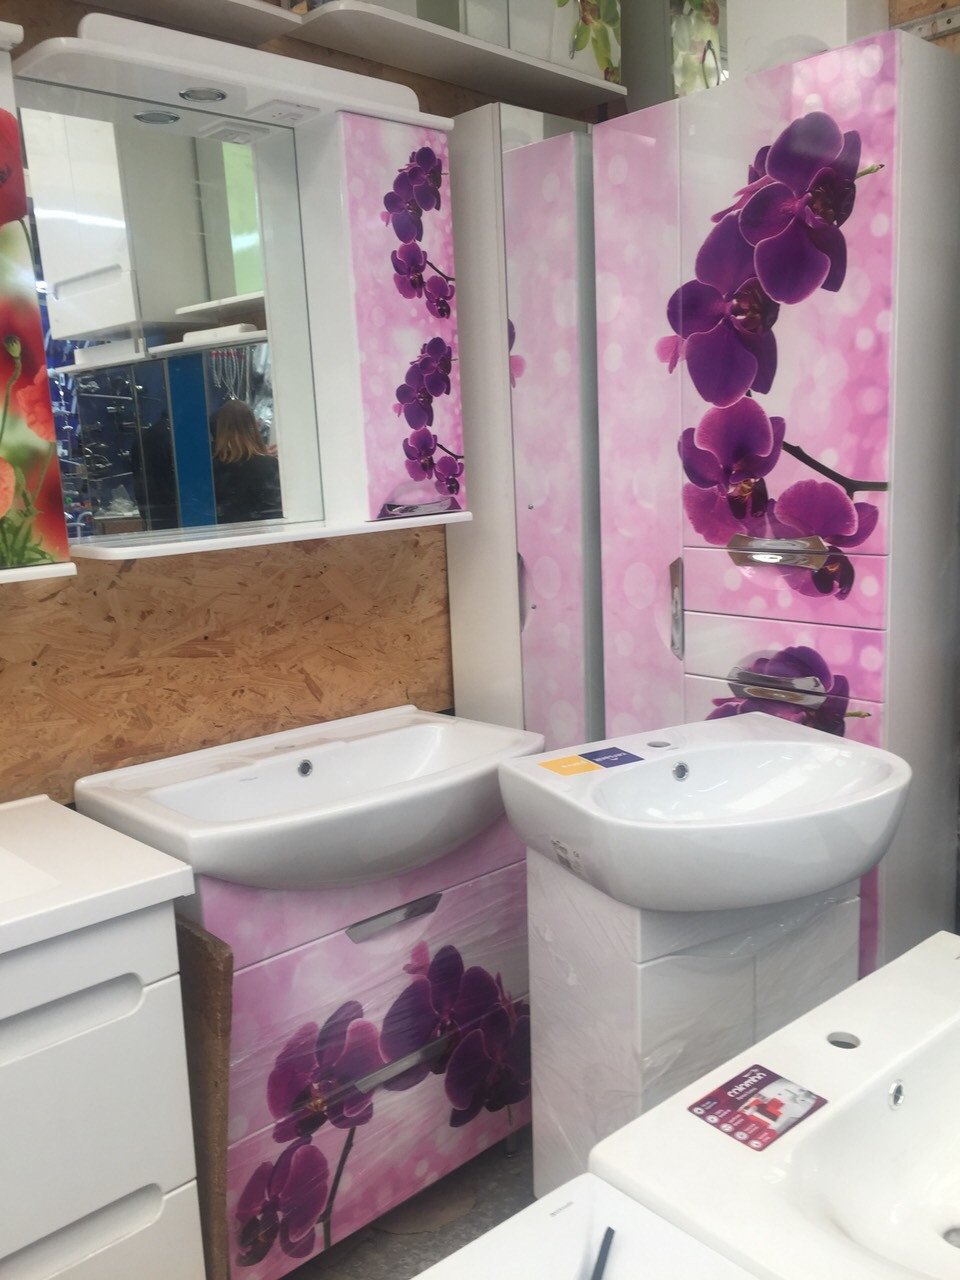 Фиолетовая мебель для ванной комнаты